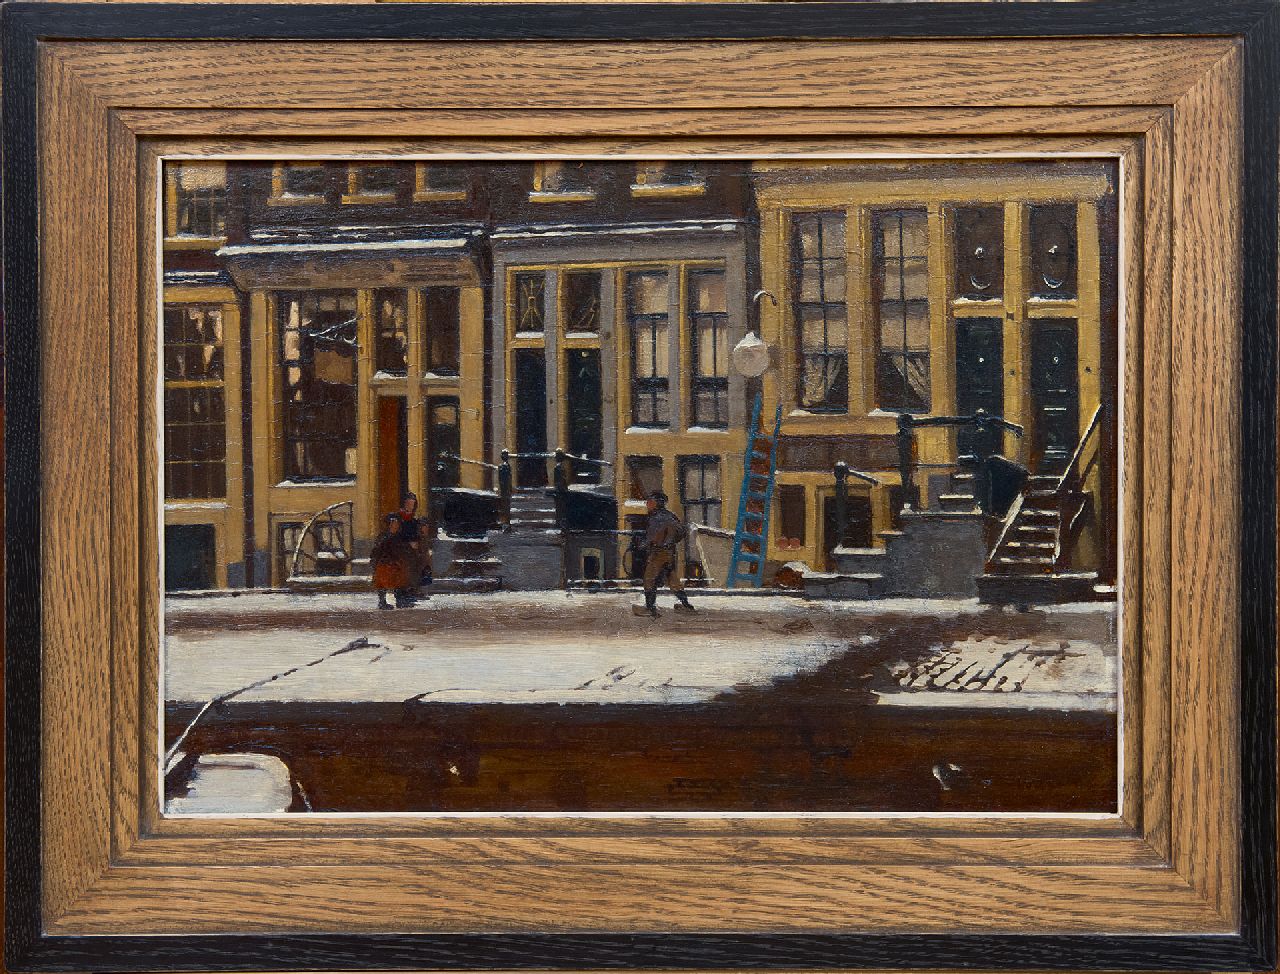 Witsen W.A.  | 'Willem' Arnold Witsen | Schilderijen te koop aangeboden | De Oude Waal in de winter, Amsterdam, olieverf op paneel 30,3 x 44,3 cm, gesigneerd rechtsonder en te dateren ca. 1912